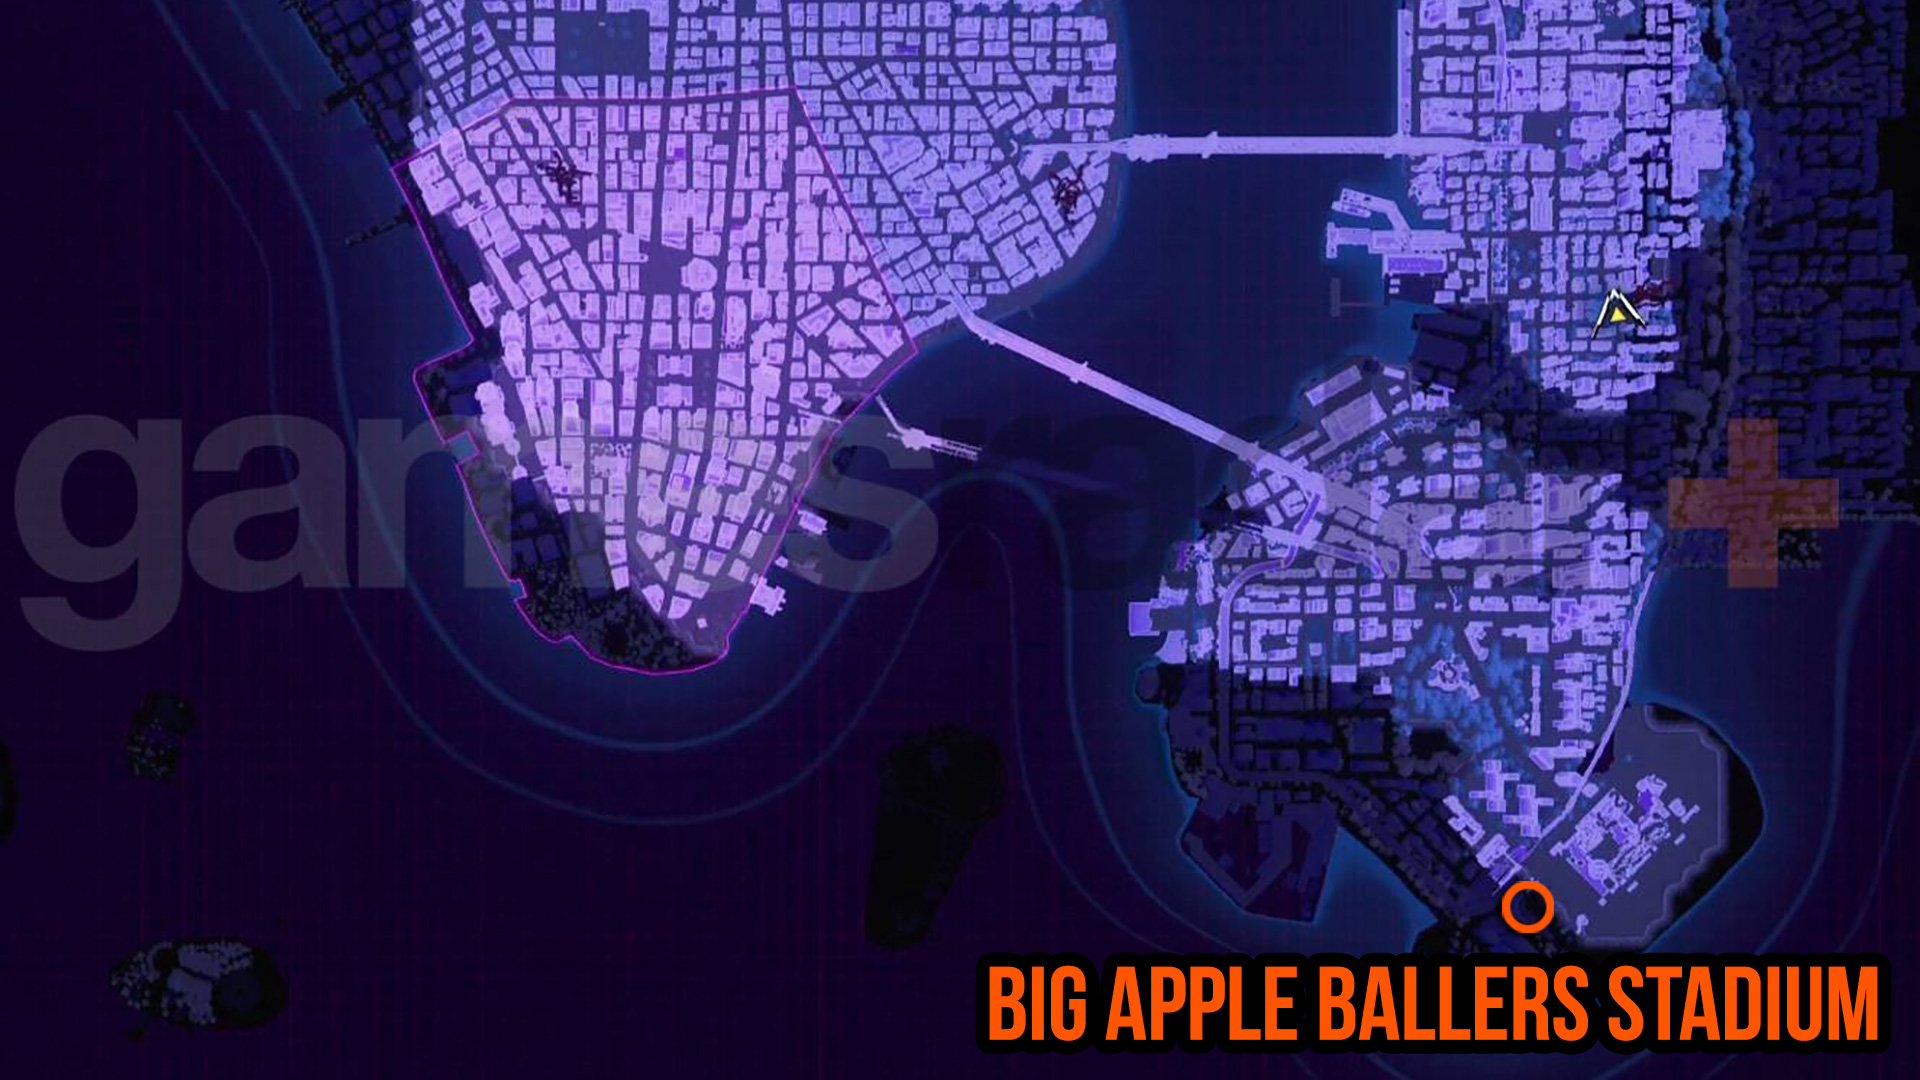 Spider-Man 2 Round the Bases kaart voor de Big Apple Ballers Stadion locatie